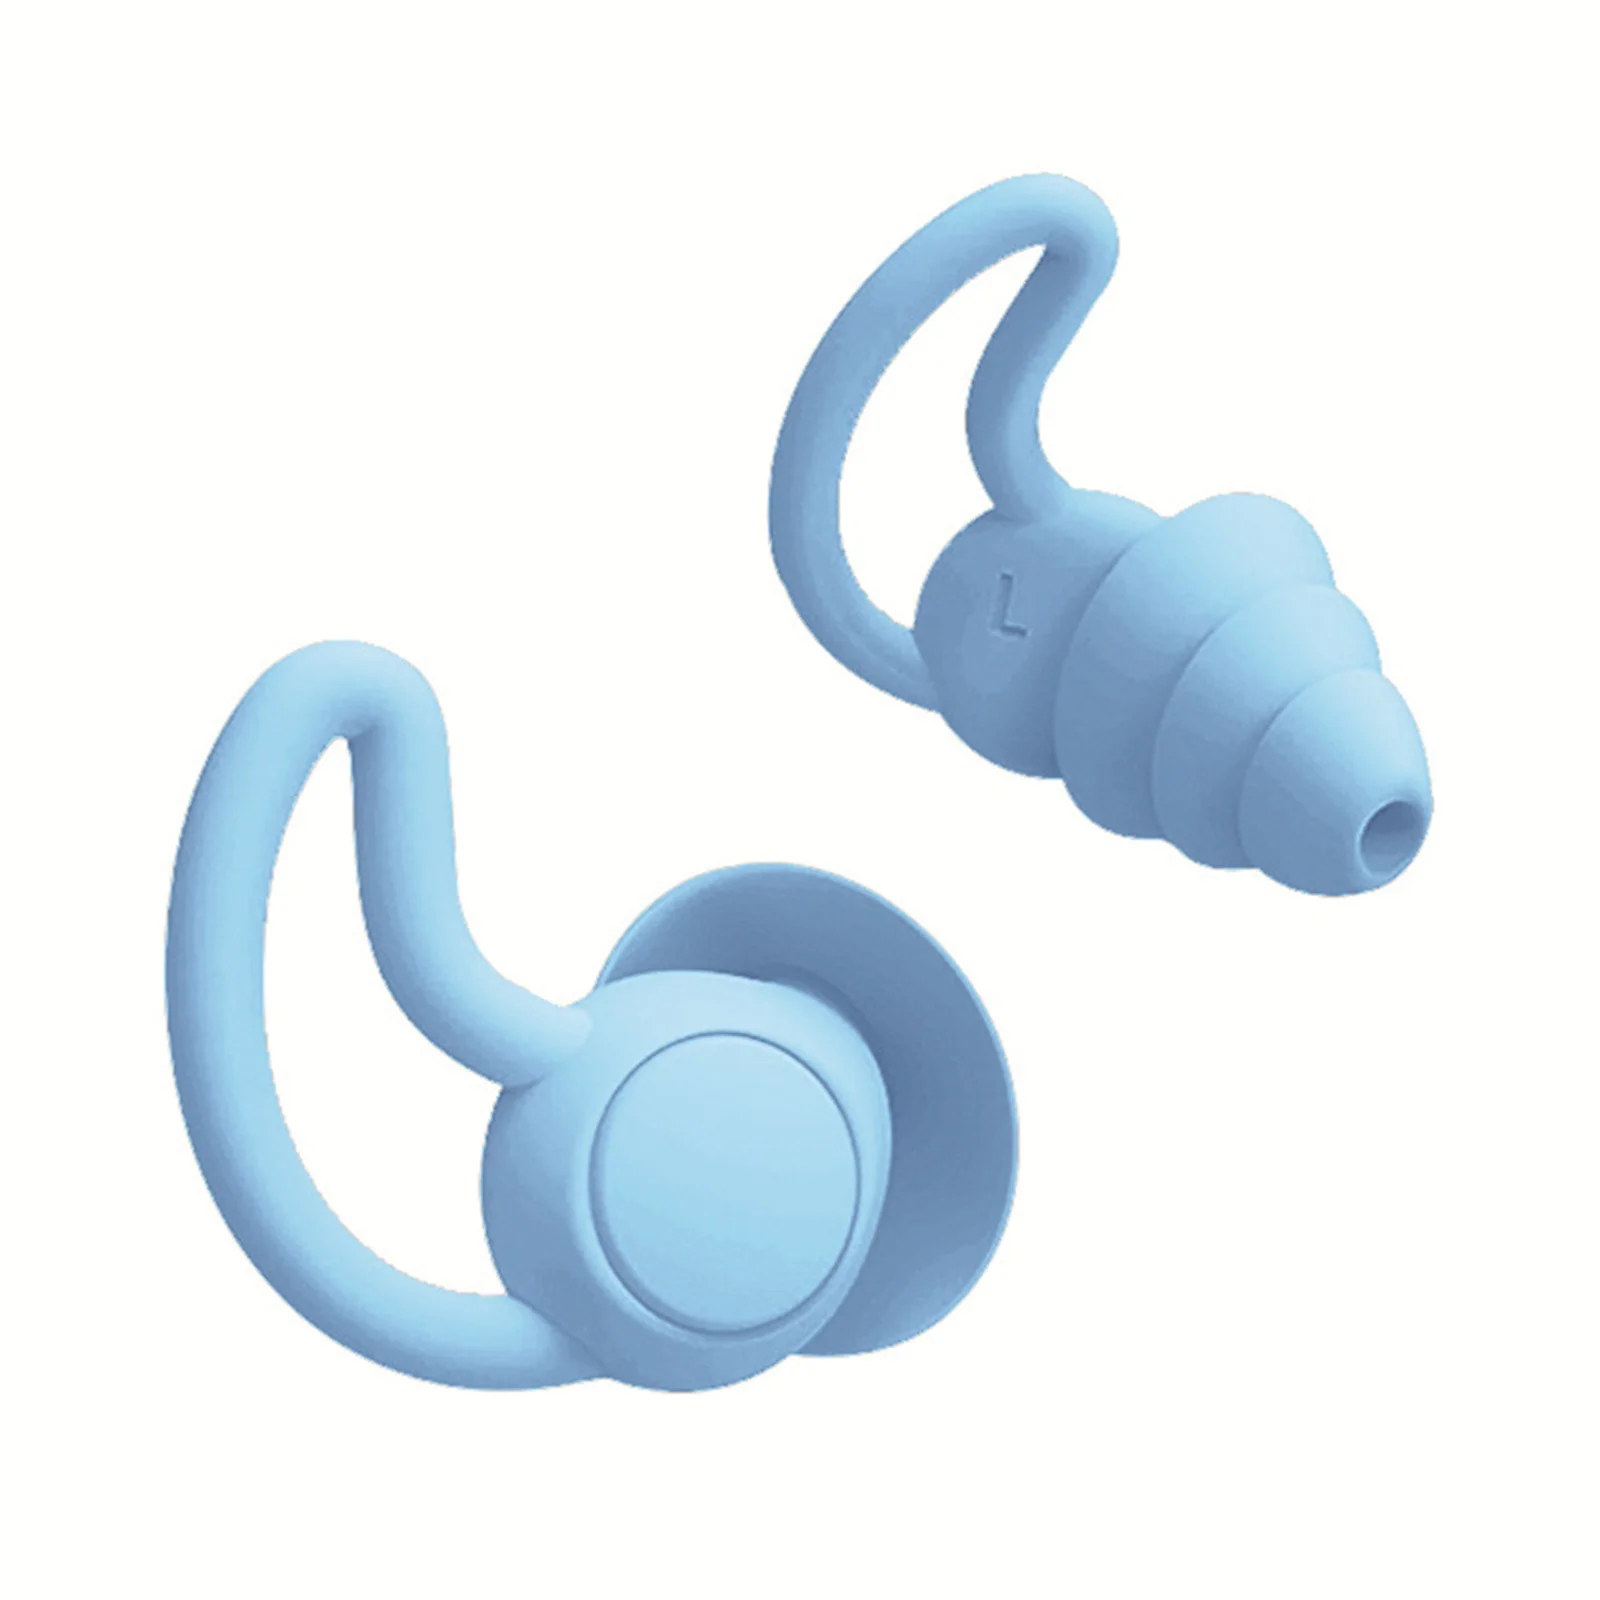 1 ~ 5ШТ Силиконовые беруши Звукоизоляция, защита ушей, мягкие Противошумные беруши для сна, плавания в воде для тренировок по плаванию 3